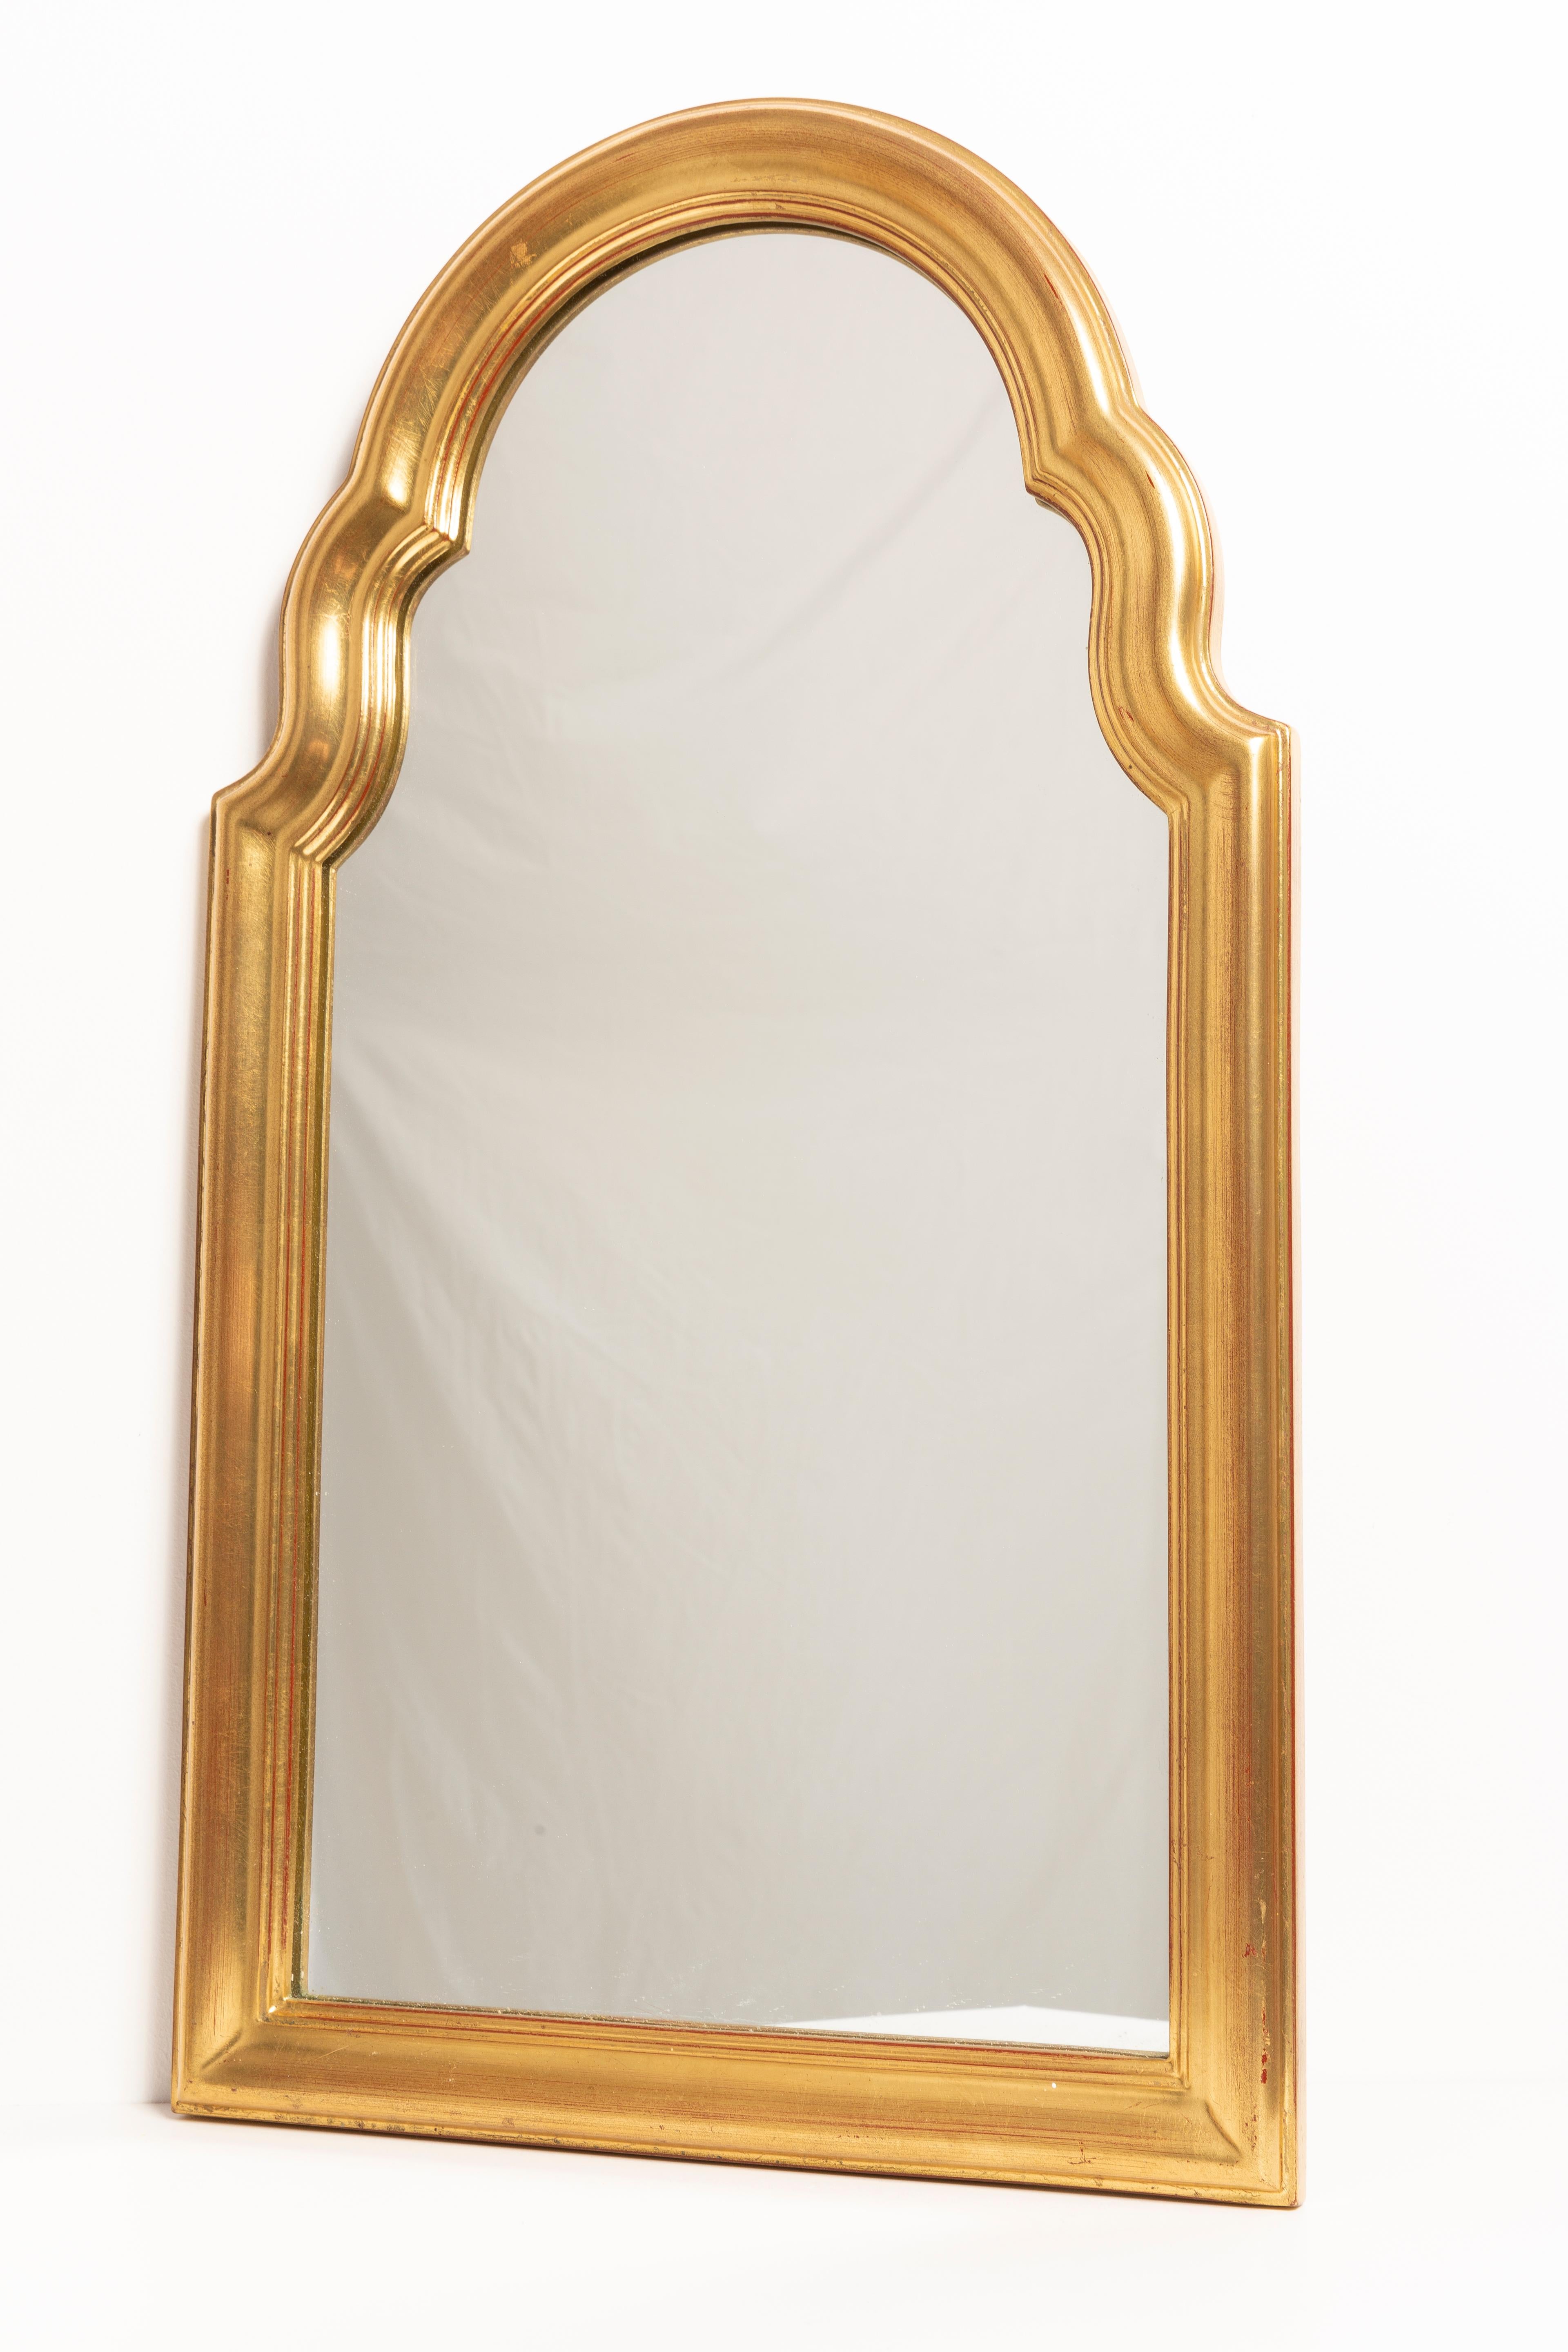 Midcentury Medium Vintage Gold Mirror, Belgium, 2000s For Sale 2